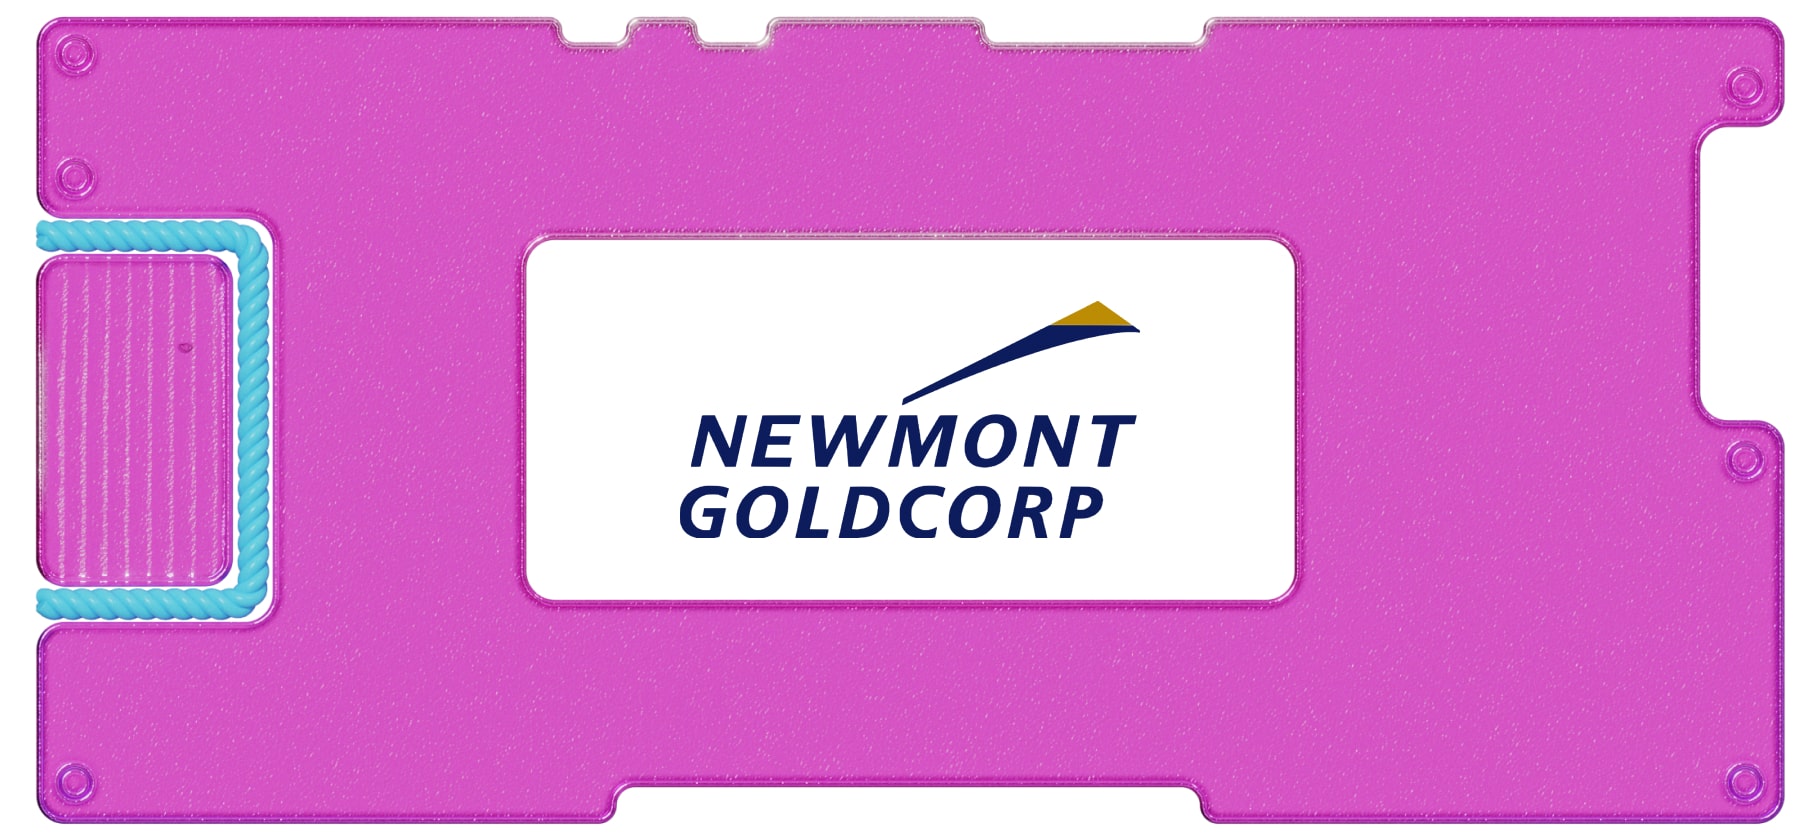 Инвестидея: Newmont, потому что не все то золото, что блестит